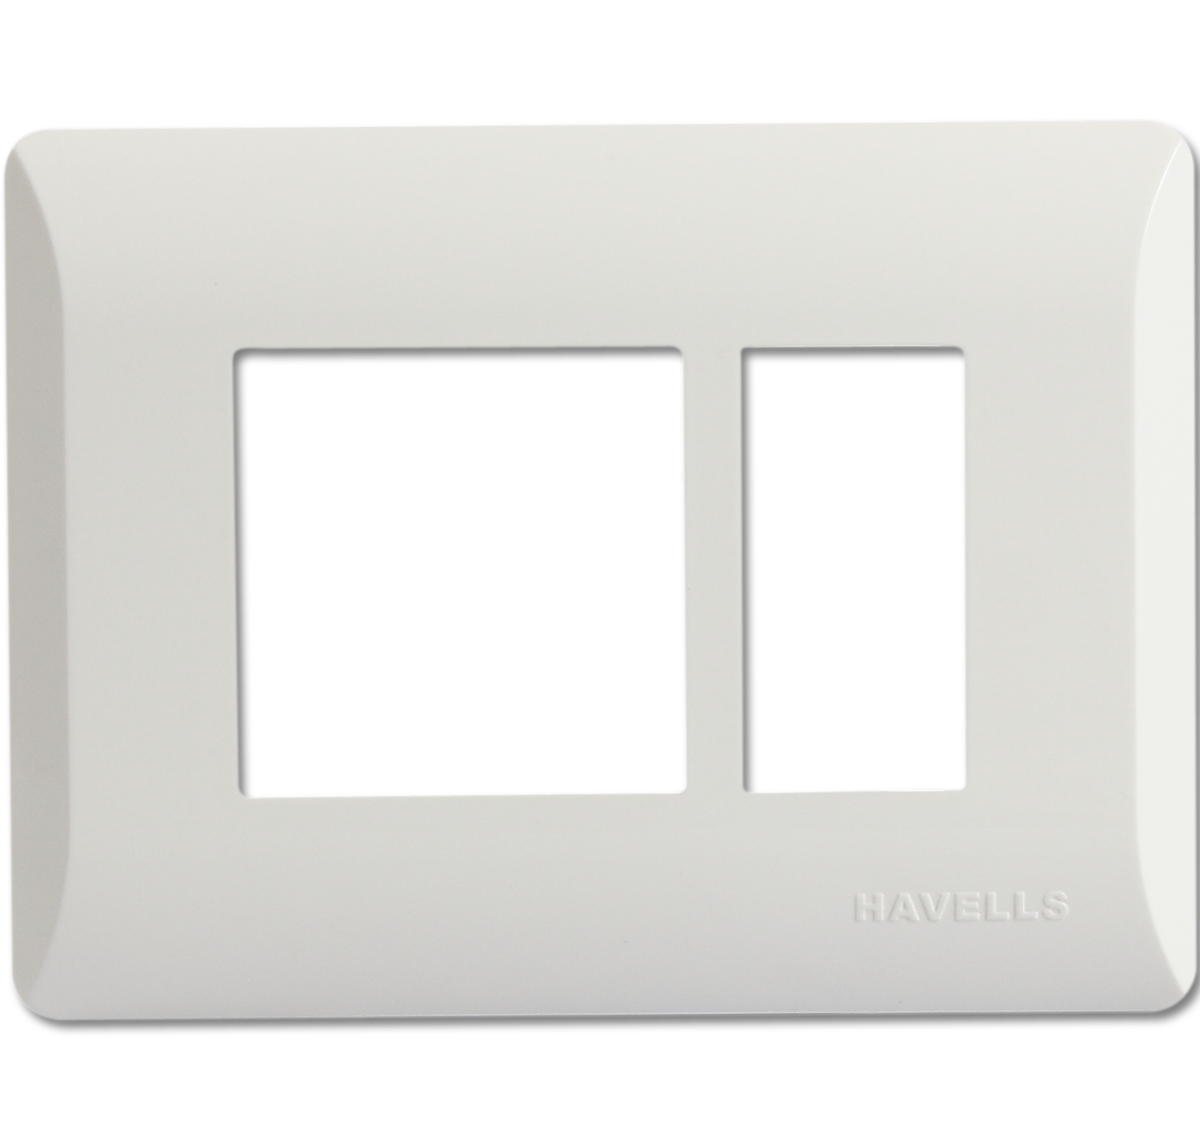 हैवेल्स कवर प्लेट 5 का पैक